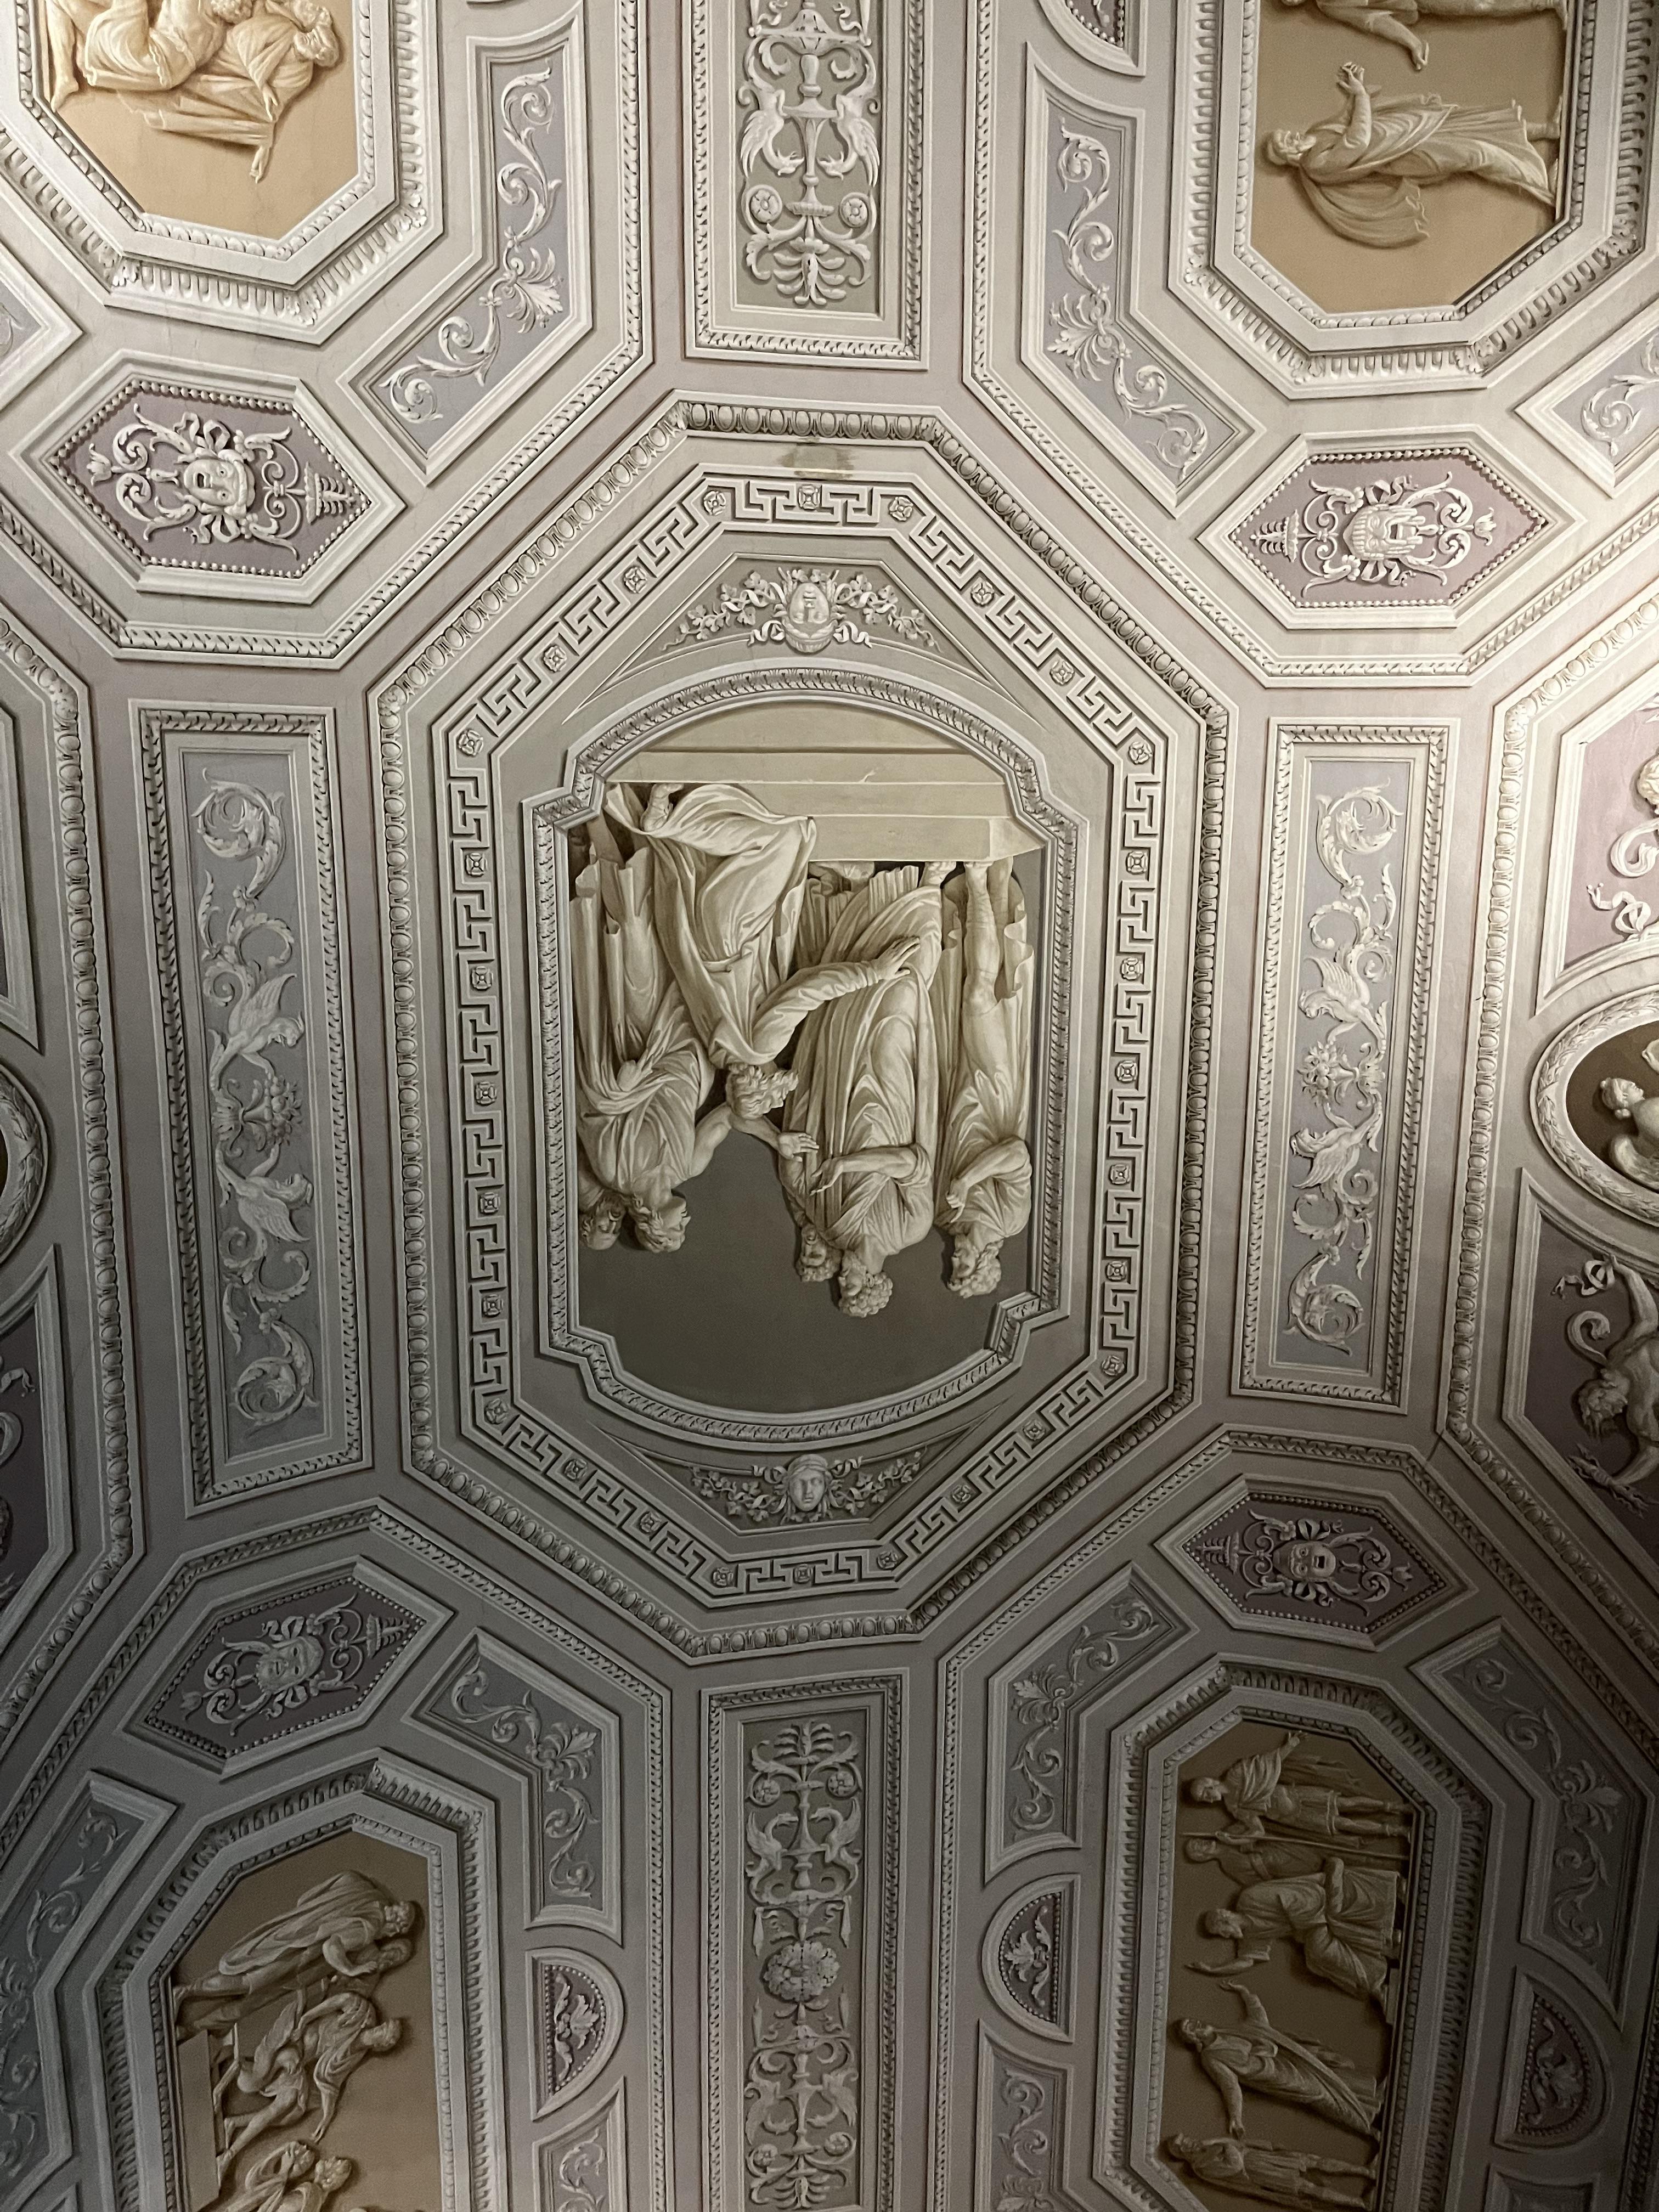 바티칸 박물관 천장화 조각